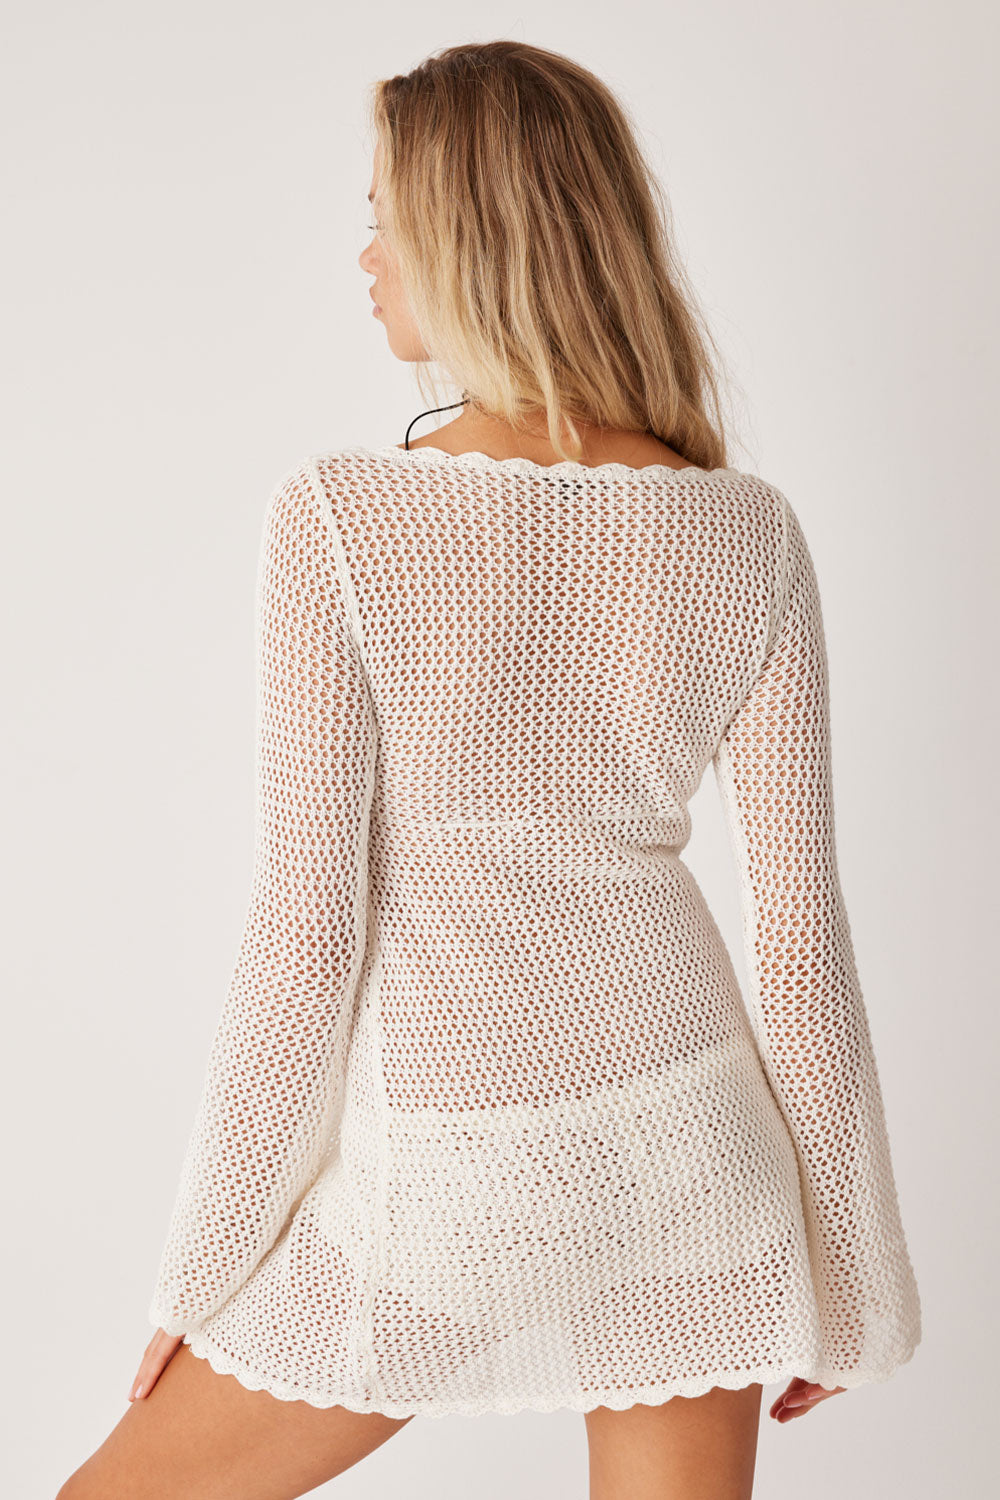 Collette Crochet Tunic - White